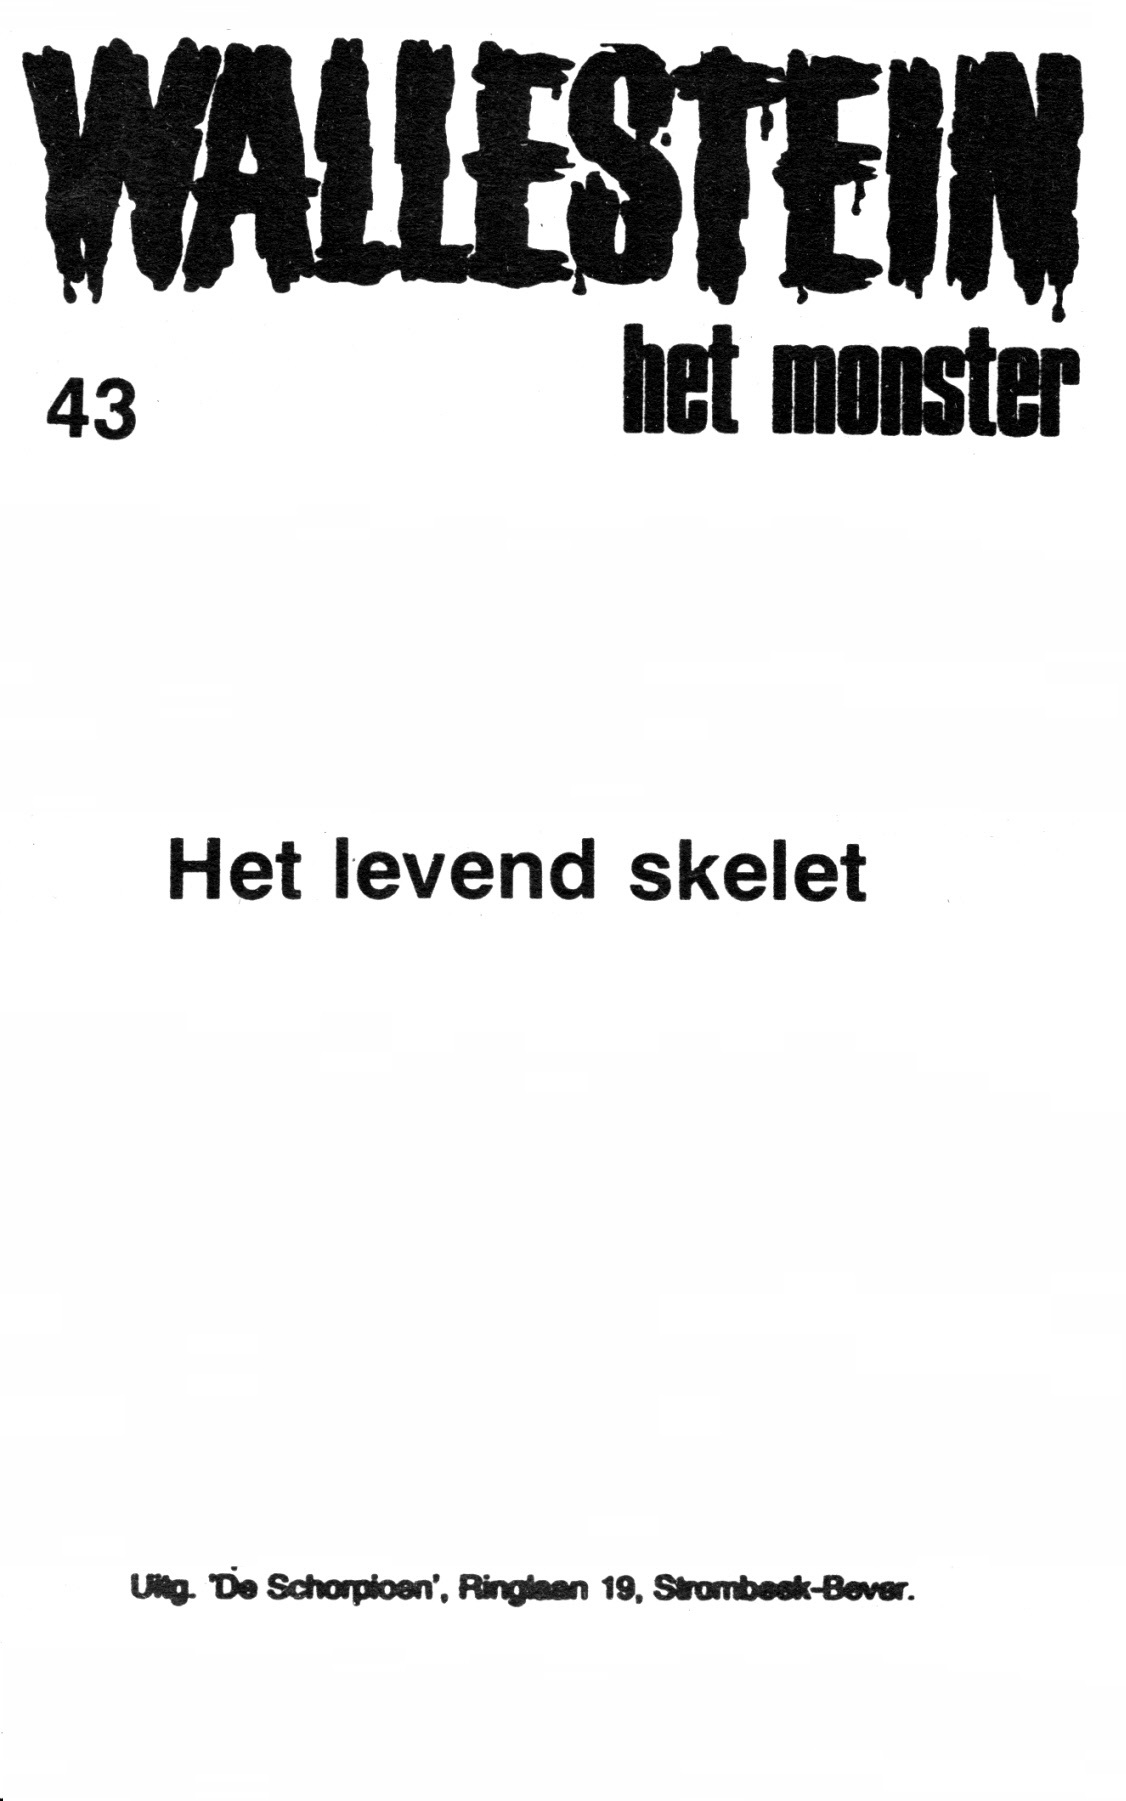 Wallestein Het Monster - 043 - Het Levend Skelet (Dutch) 1